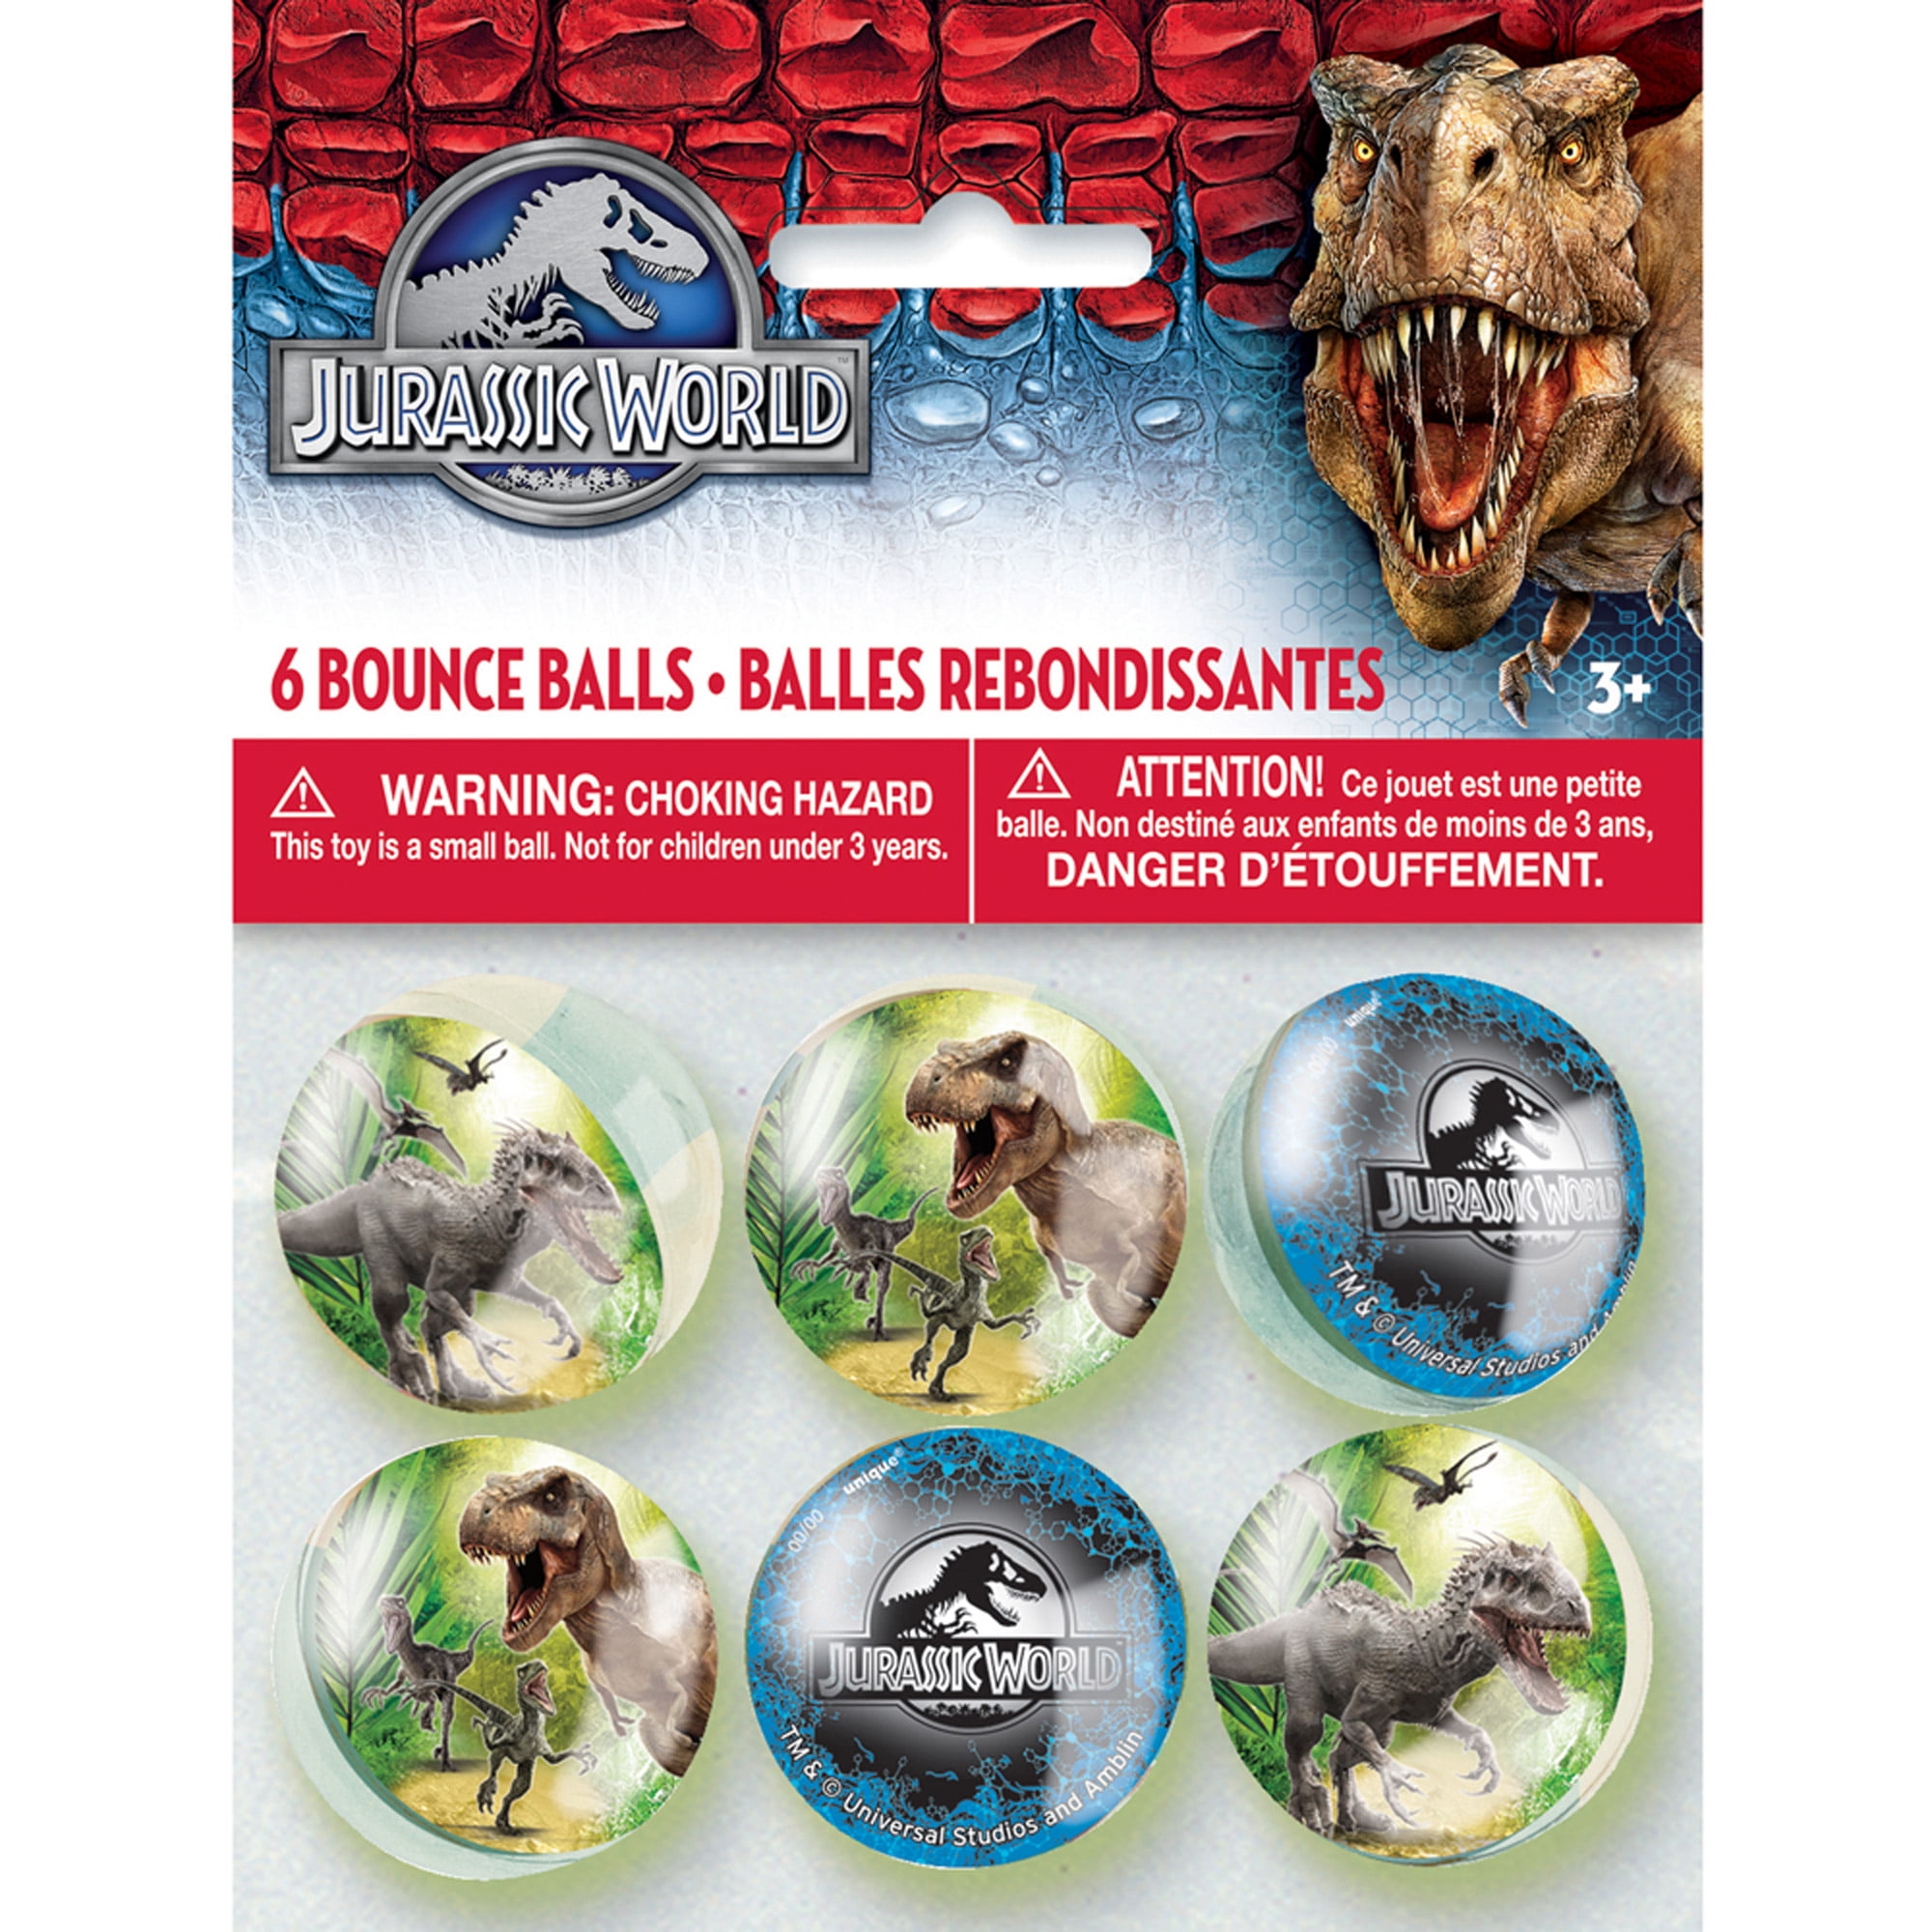 dinosaur bouncy balls